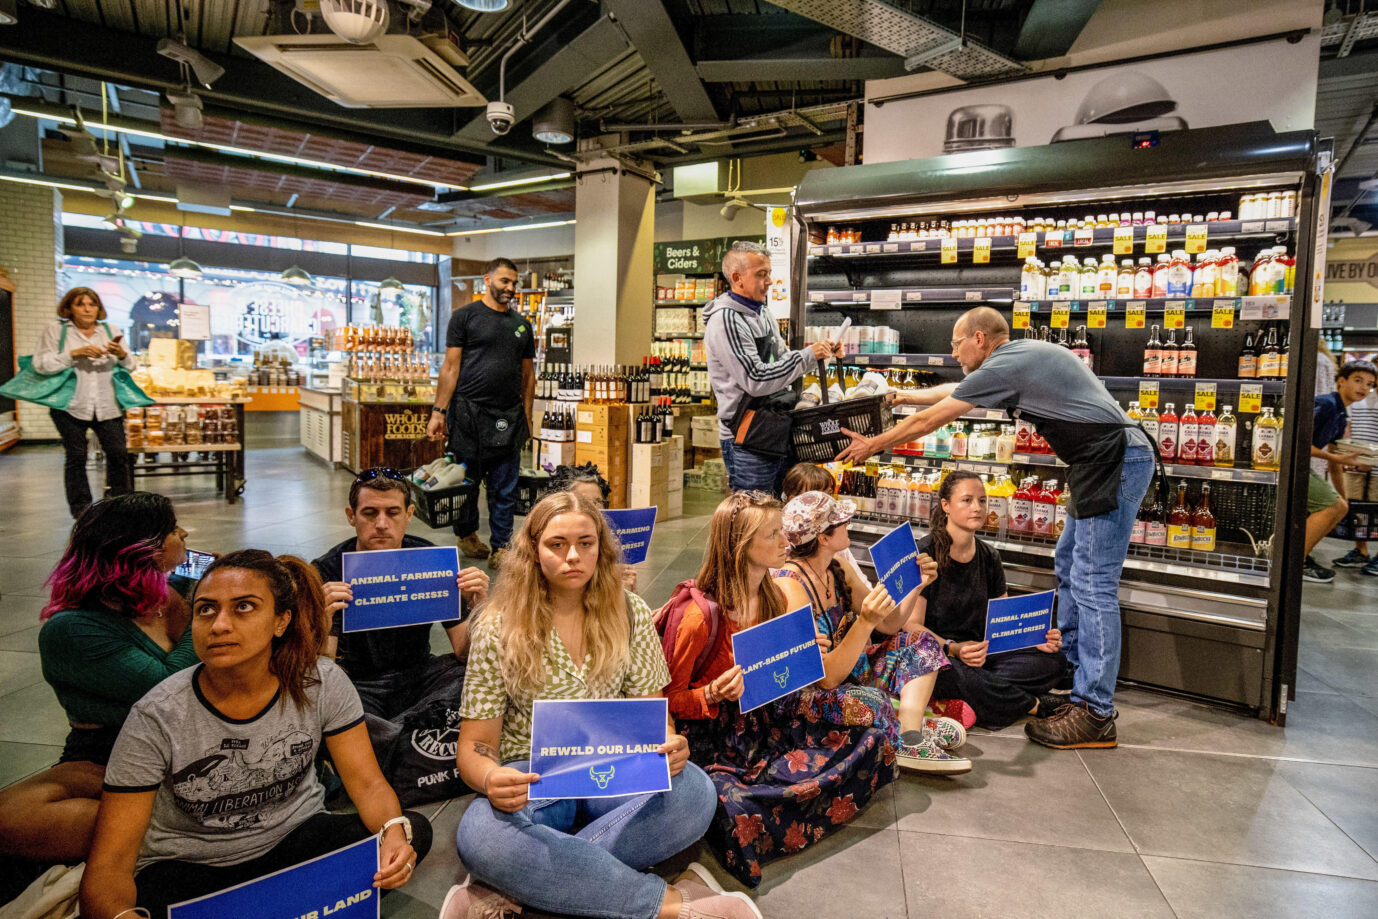 Radikale Klimaschützer der Gruppe Animal Rebellion bei einem Sitzstreik in einem Supermarkt in London: Zuletzt verschütten sie demonstrativ Milch, um für eine pflanzliche Ernährung zu werben